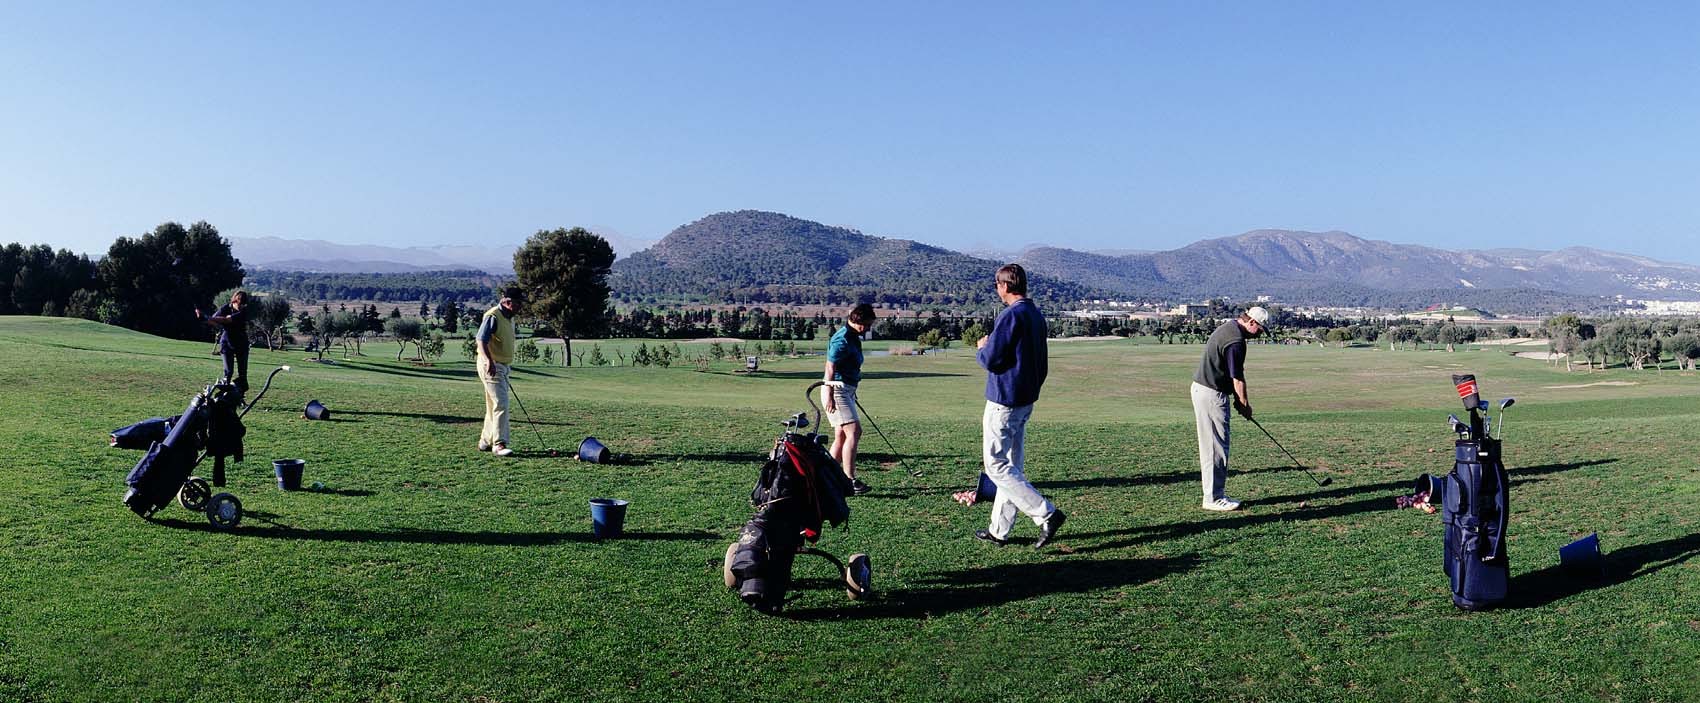 Golf de Poniente - Drivning Range mit Golfspieler